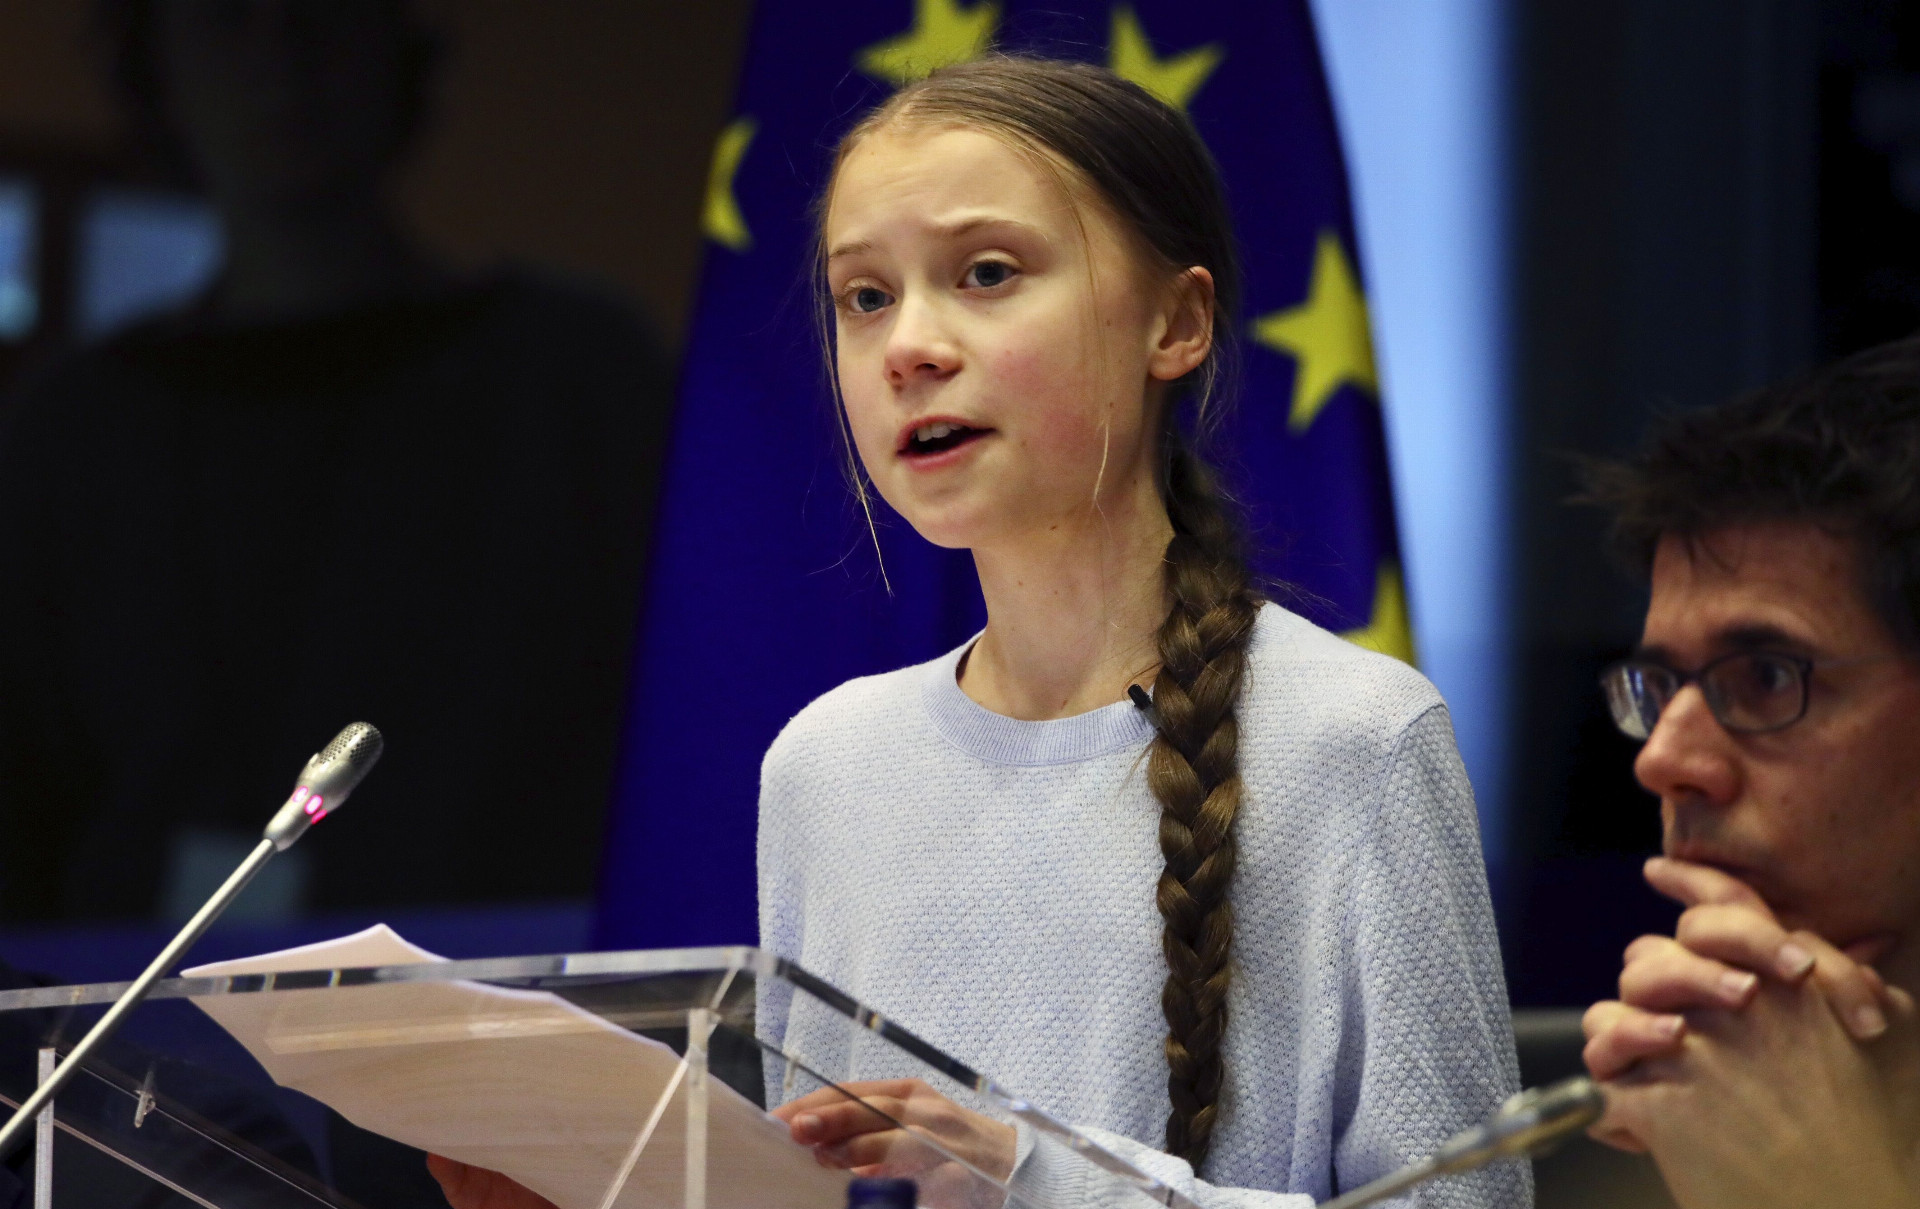 Aktivistka Greta Thunbergová sa k plánu postavila kriticky. Chýbajú jej krátkodobé ciele.